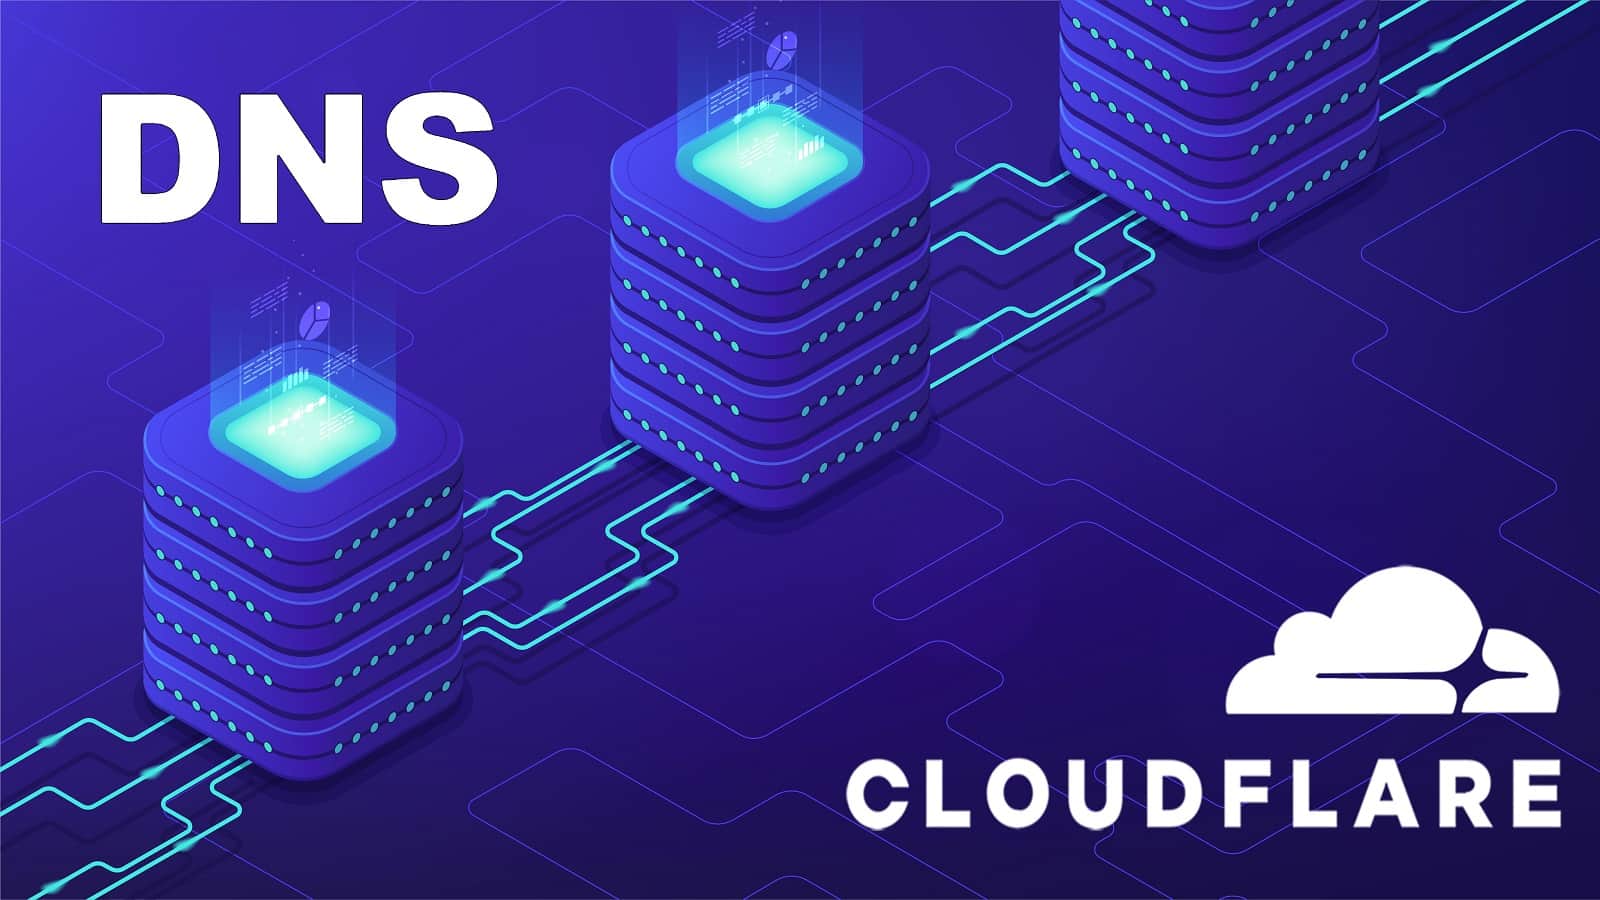 Cloudflare estrena su propio servicio “DNS 1.1.1.1” más rápido y privado